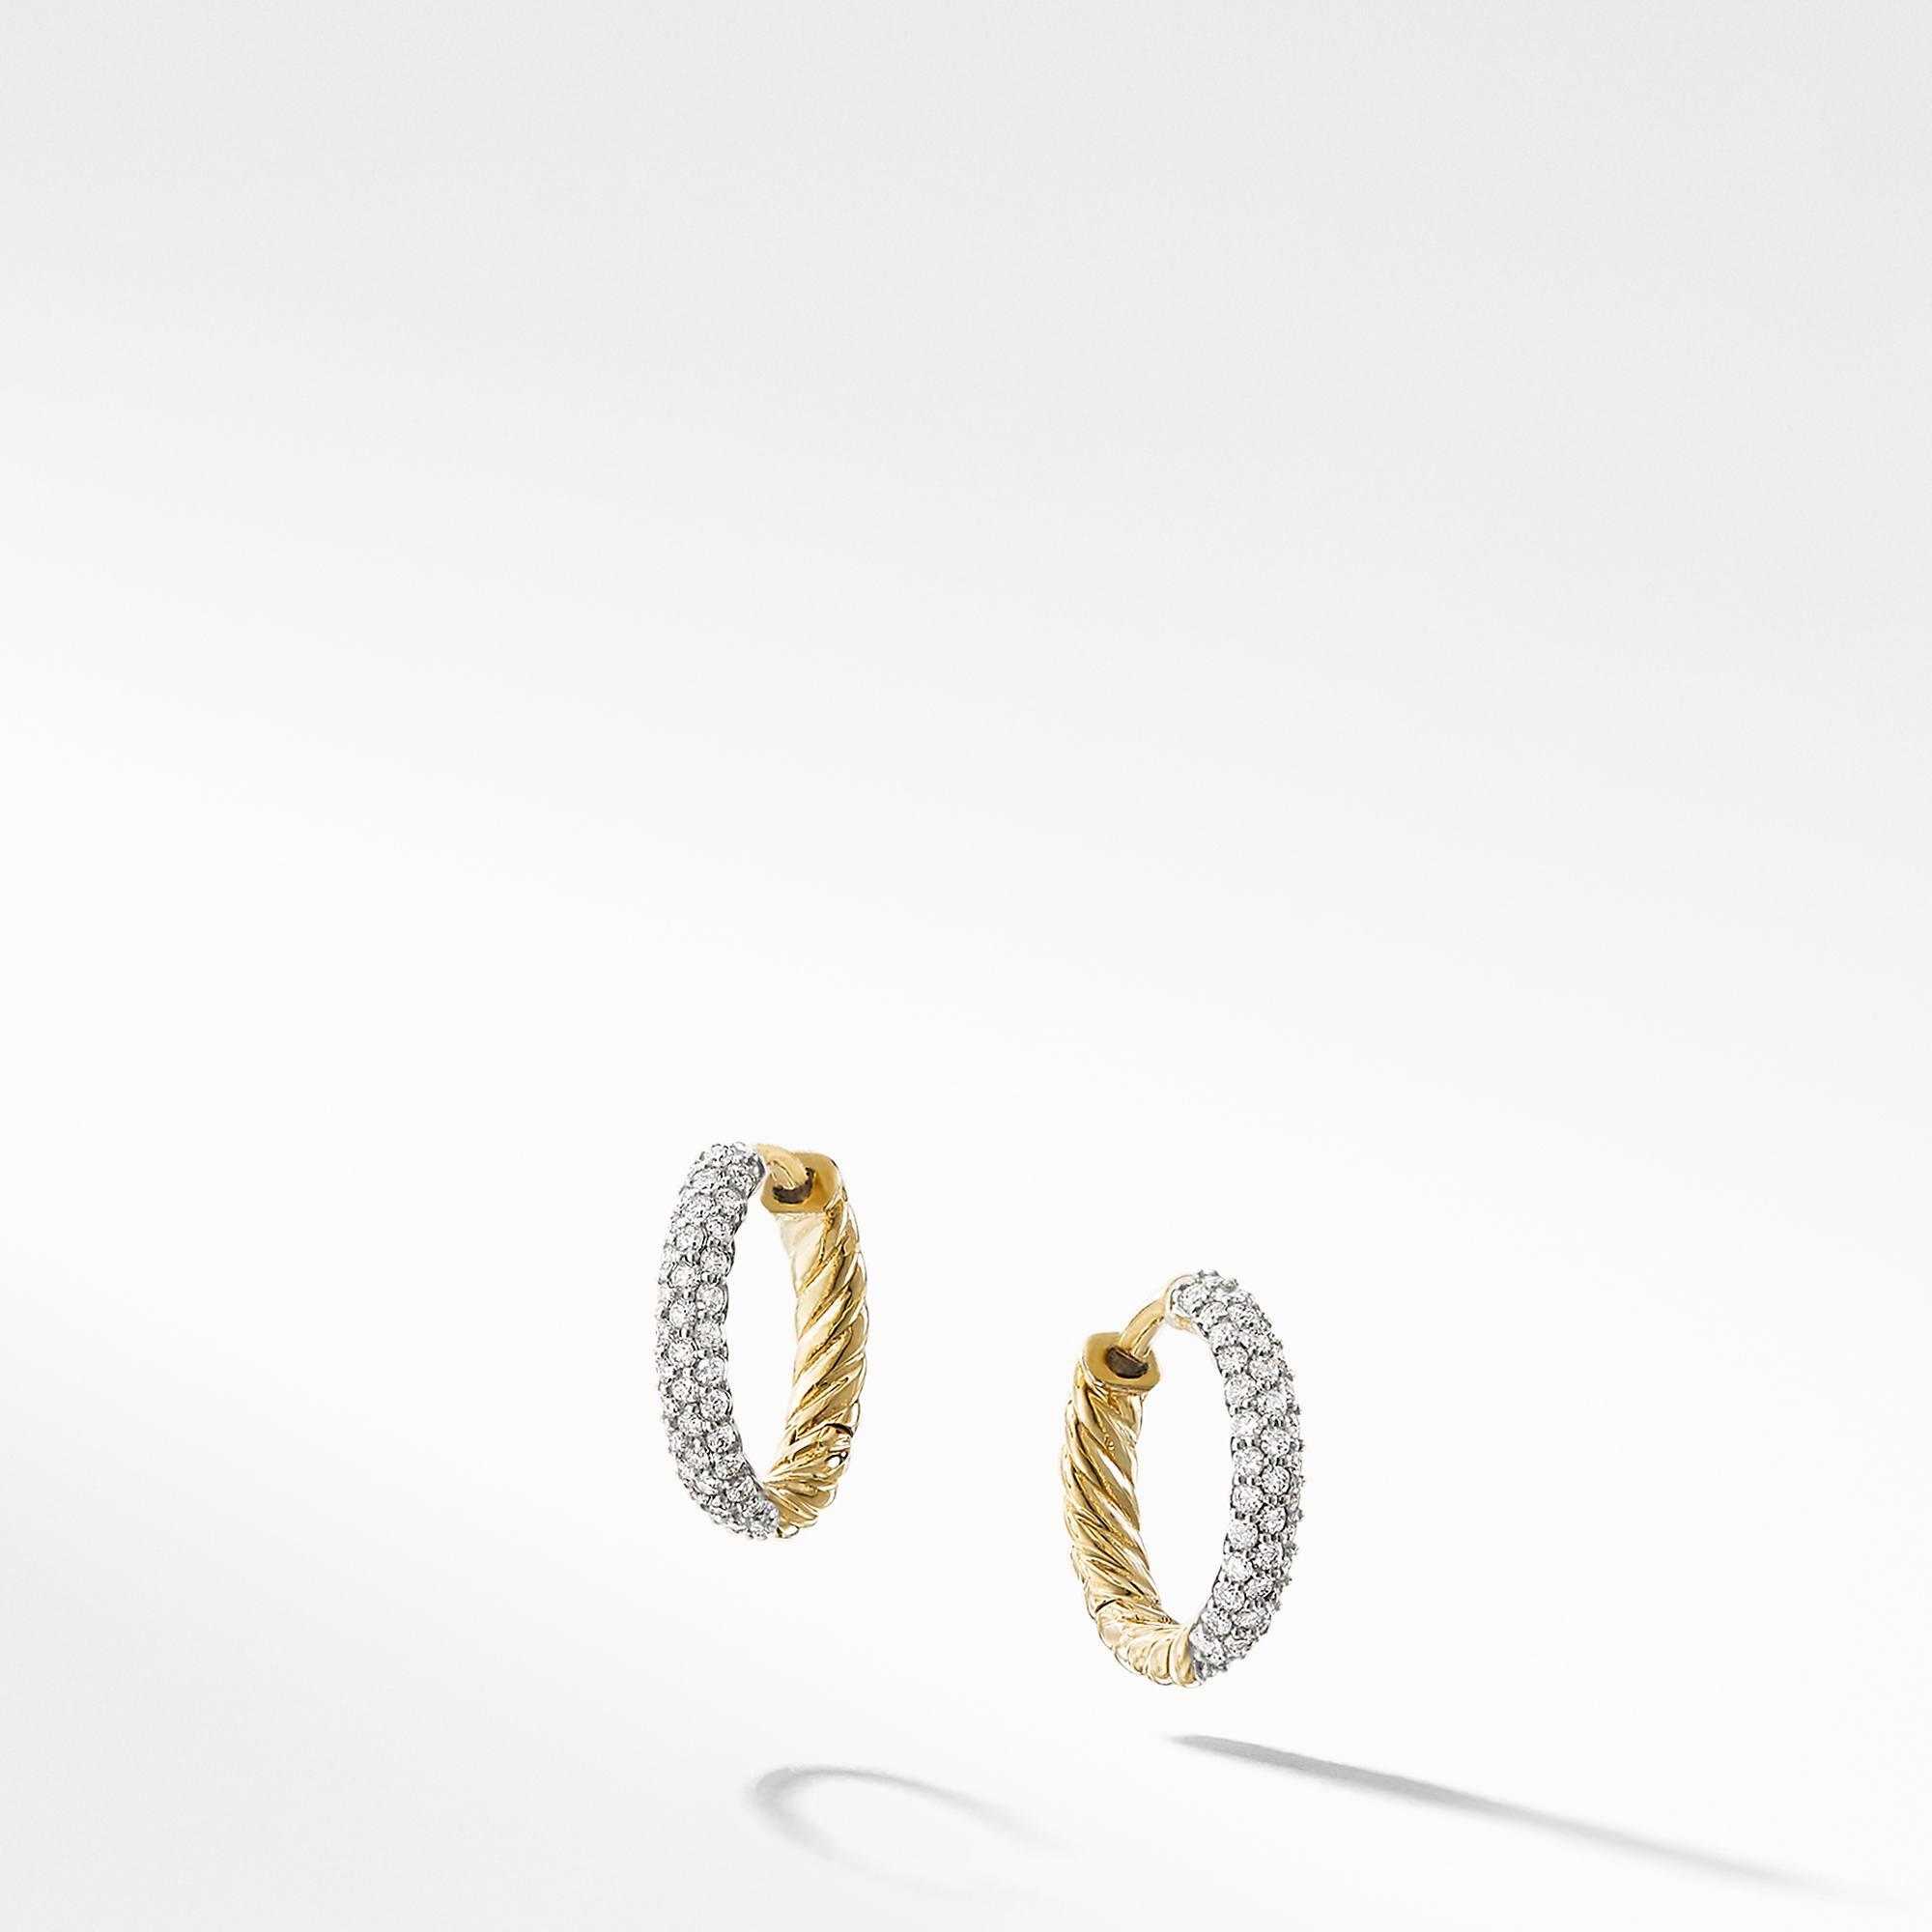 David Yurman Petite Pave Huggie Hoop Earrings with Diamonds in 18k Gold